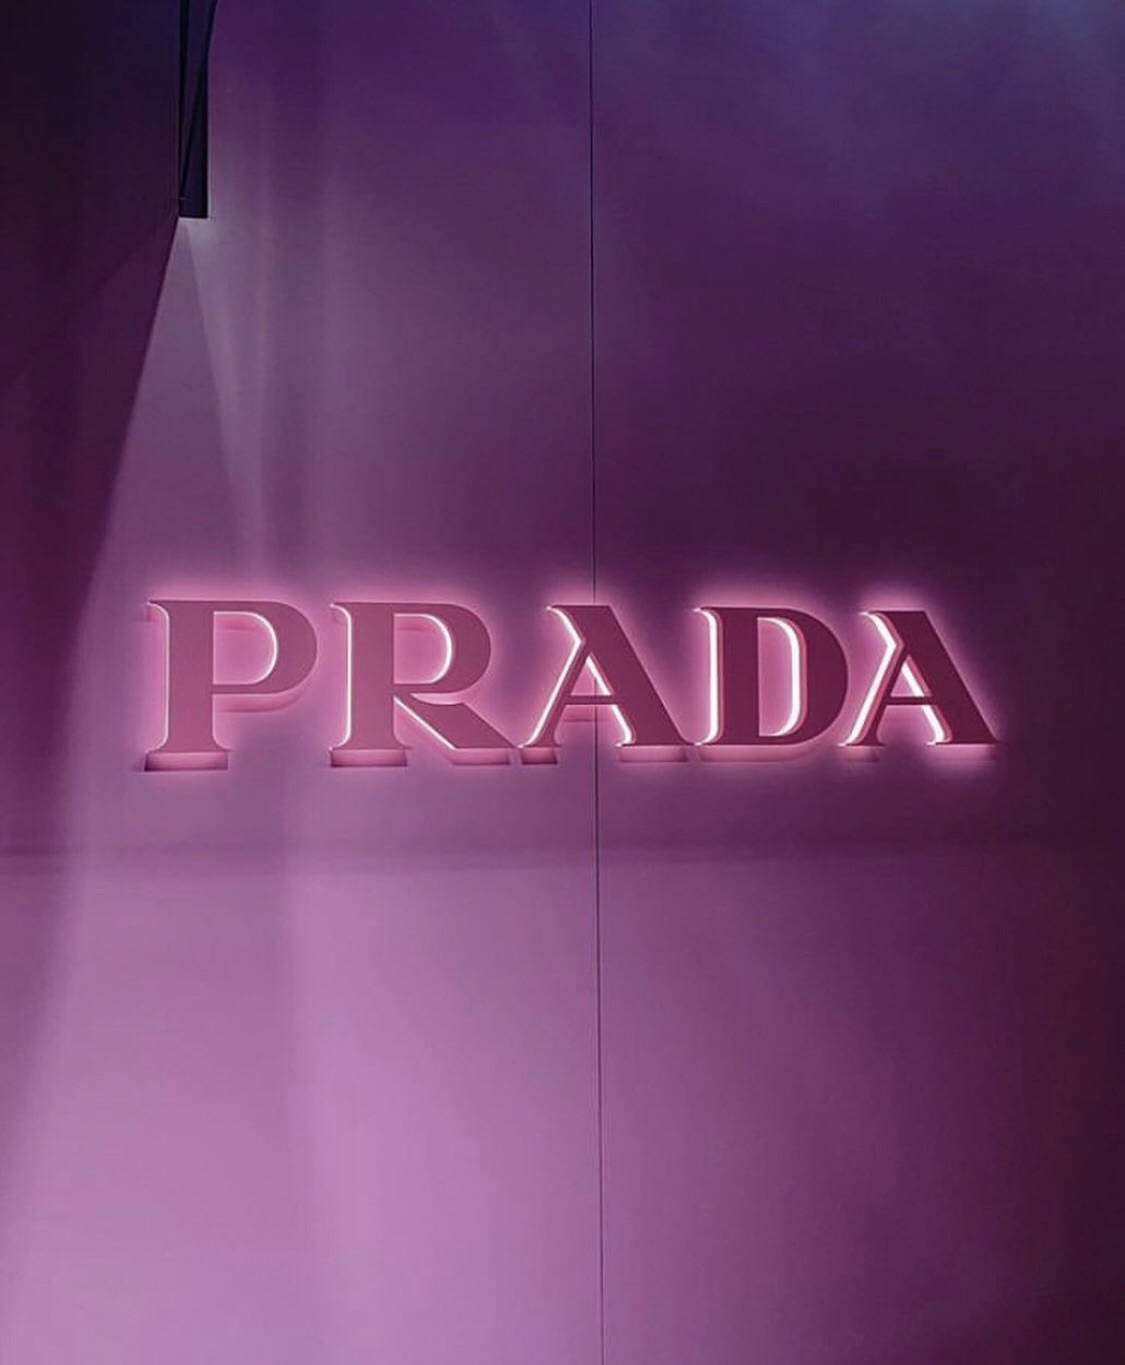 Free Prada Wallpaper Downloads, [100+] Prada Wallpapers for FREE |  